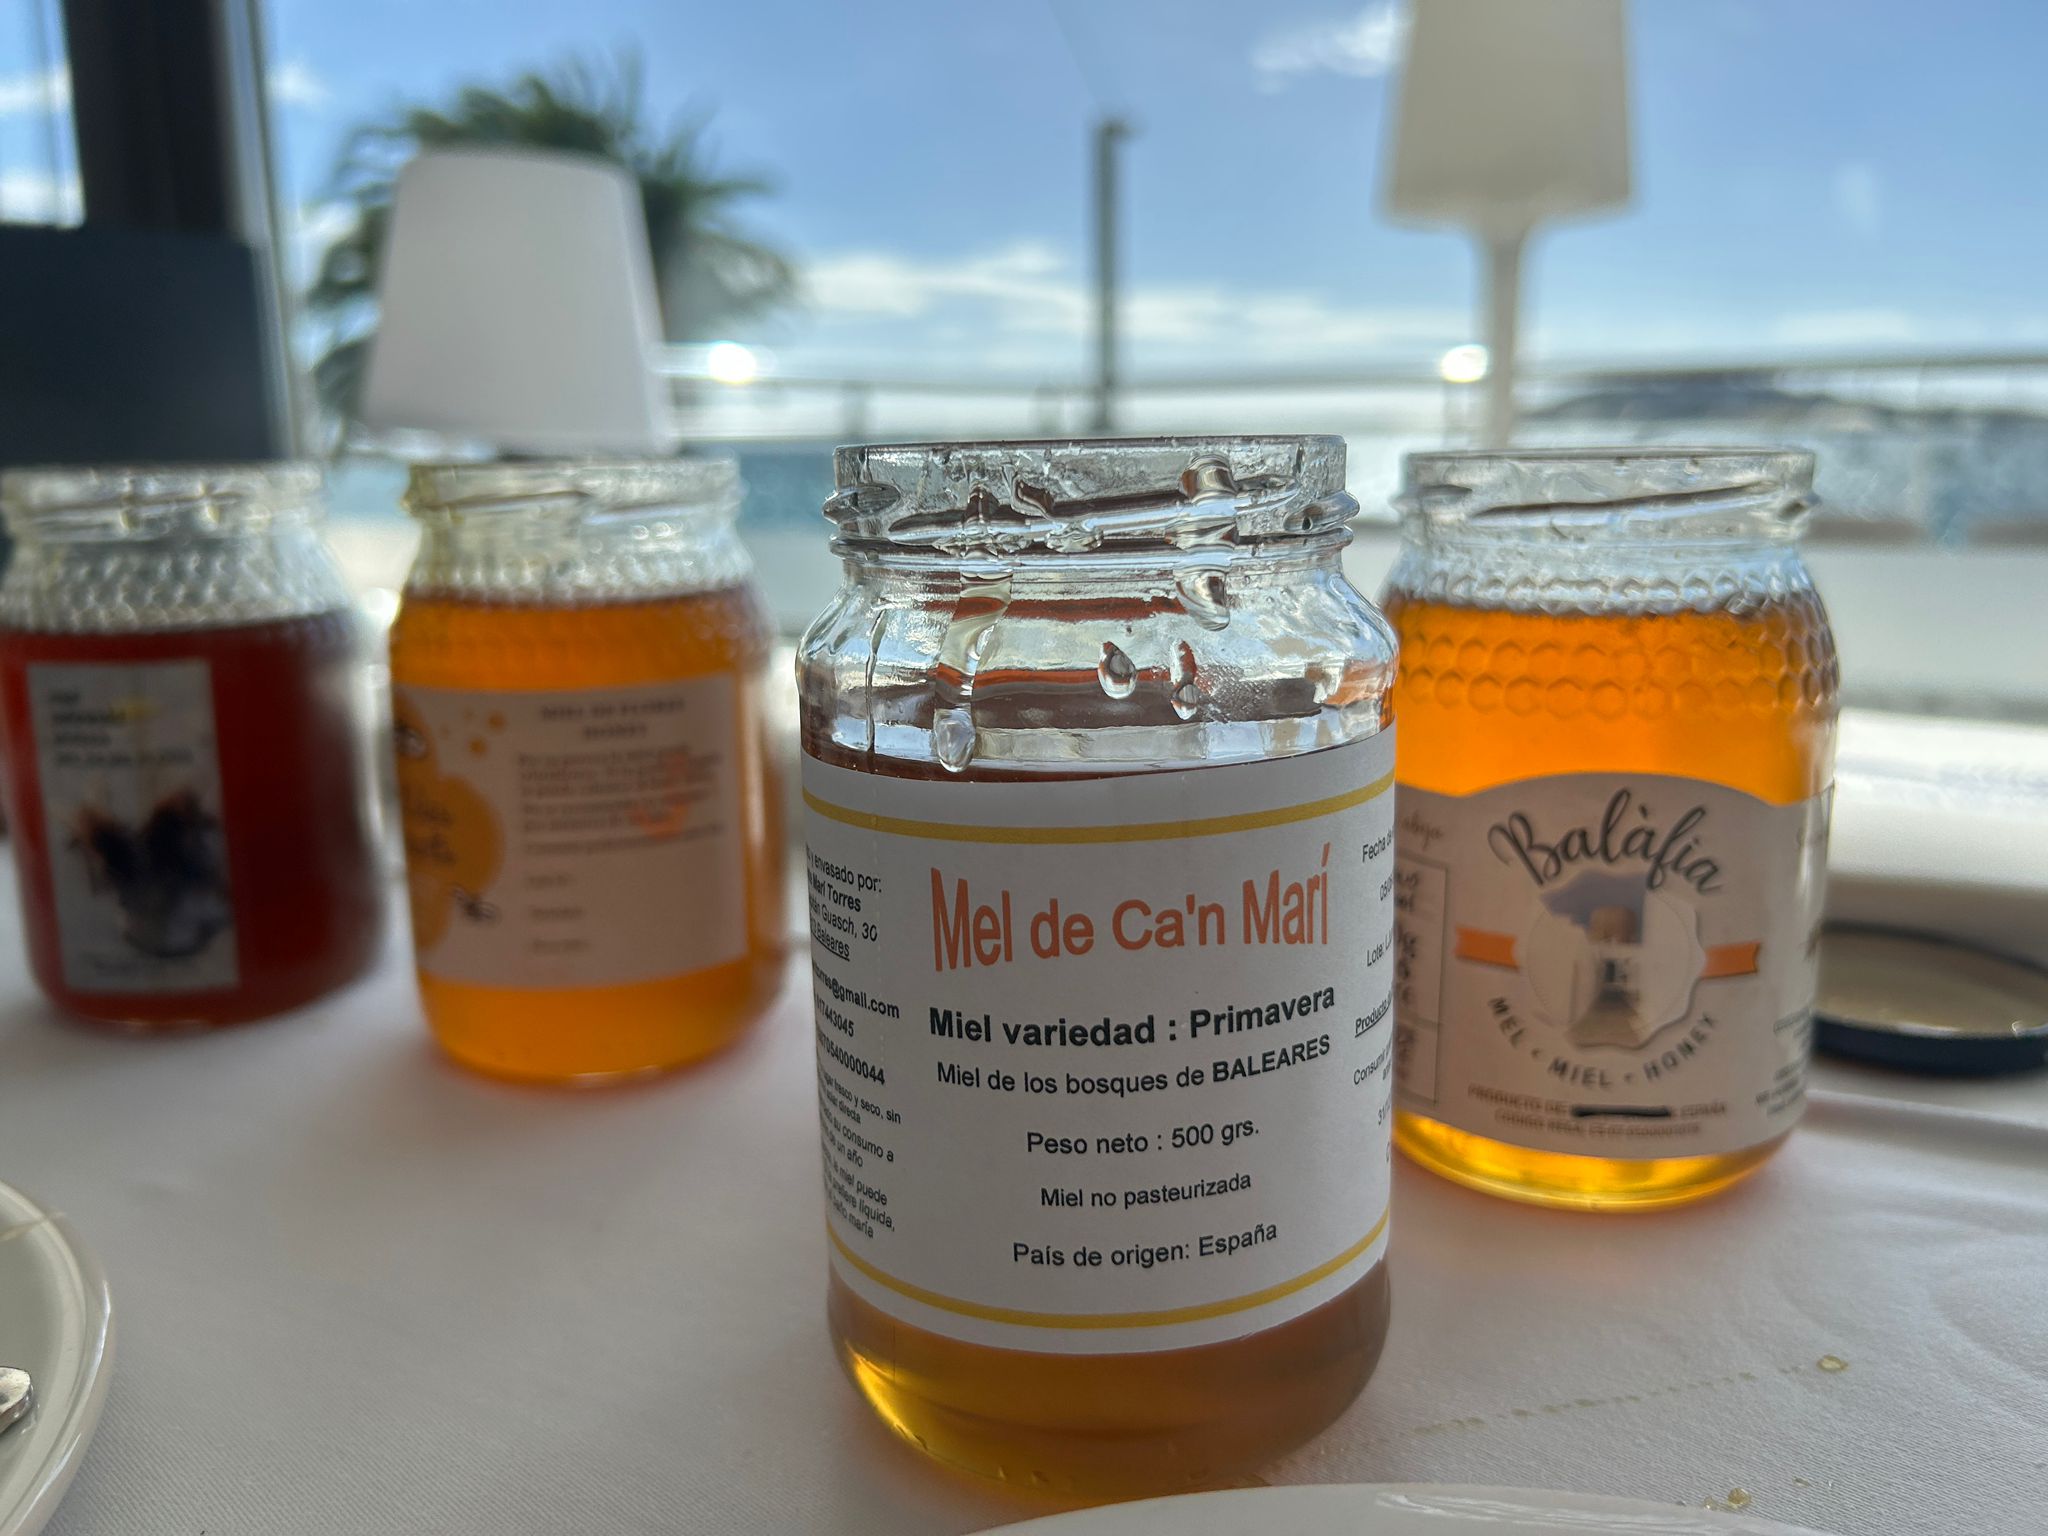 El caràcter específic de la ‘mel d’Eivissa/miel de Ibiza’ està vinculat a una singularitat floral característica de la zona geogràfica de l’illa, que està present en l’aspecte pol·línic de tota la gamma de mel produïda a la zona geogràfica. La diversitat de flora de l’illa determina conjunts florals marcats per la presència natural de trèvol groc, trèvol pudent, altres lleguminoses, llengua de bou a la mel de primavera, i de bruc i garrover a la de tardor. La mel d’Eivissa és també fruit de la tècnica i la destresa dels apicultors que han sabut conèixer les particularitats d’aquest territori per produir mels molt característiques i diferenciades en funció dels emplaçaments elegits i les zones de recol·lecció de nèctar i de libació previstes, aprofitant la gran variabilitat de floracions de l’illa.